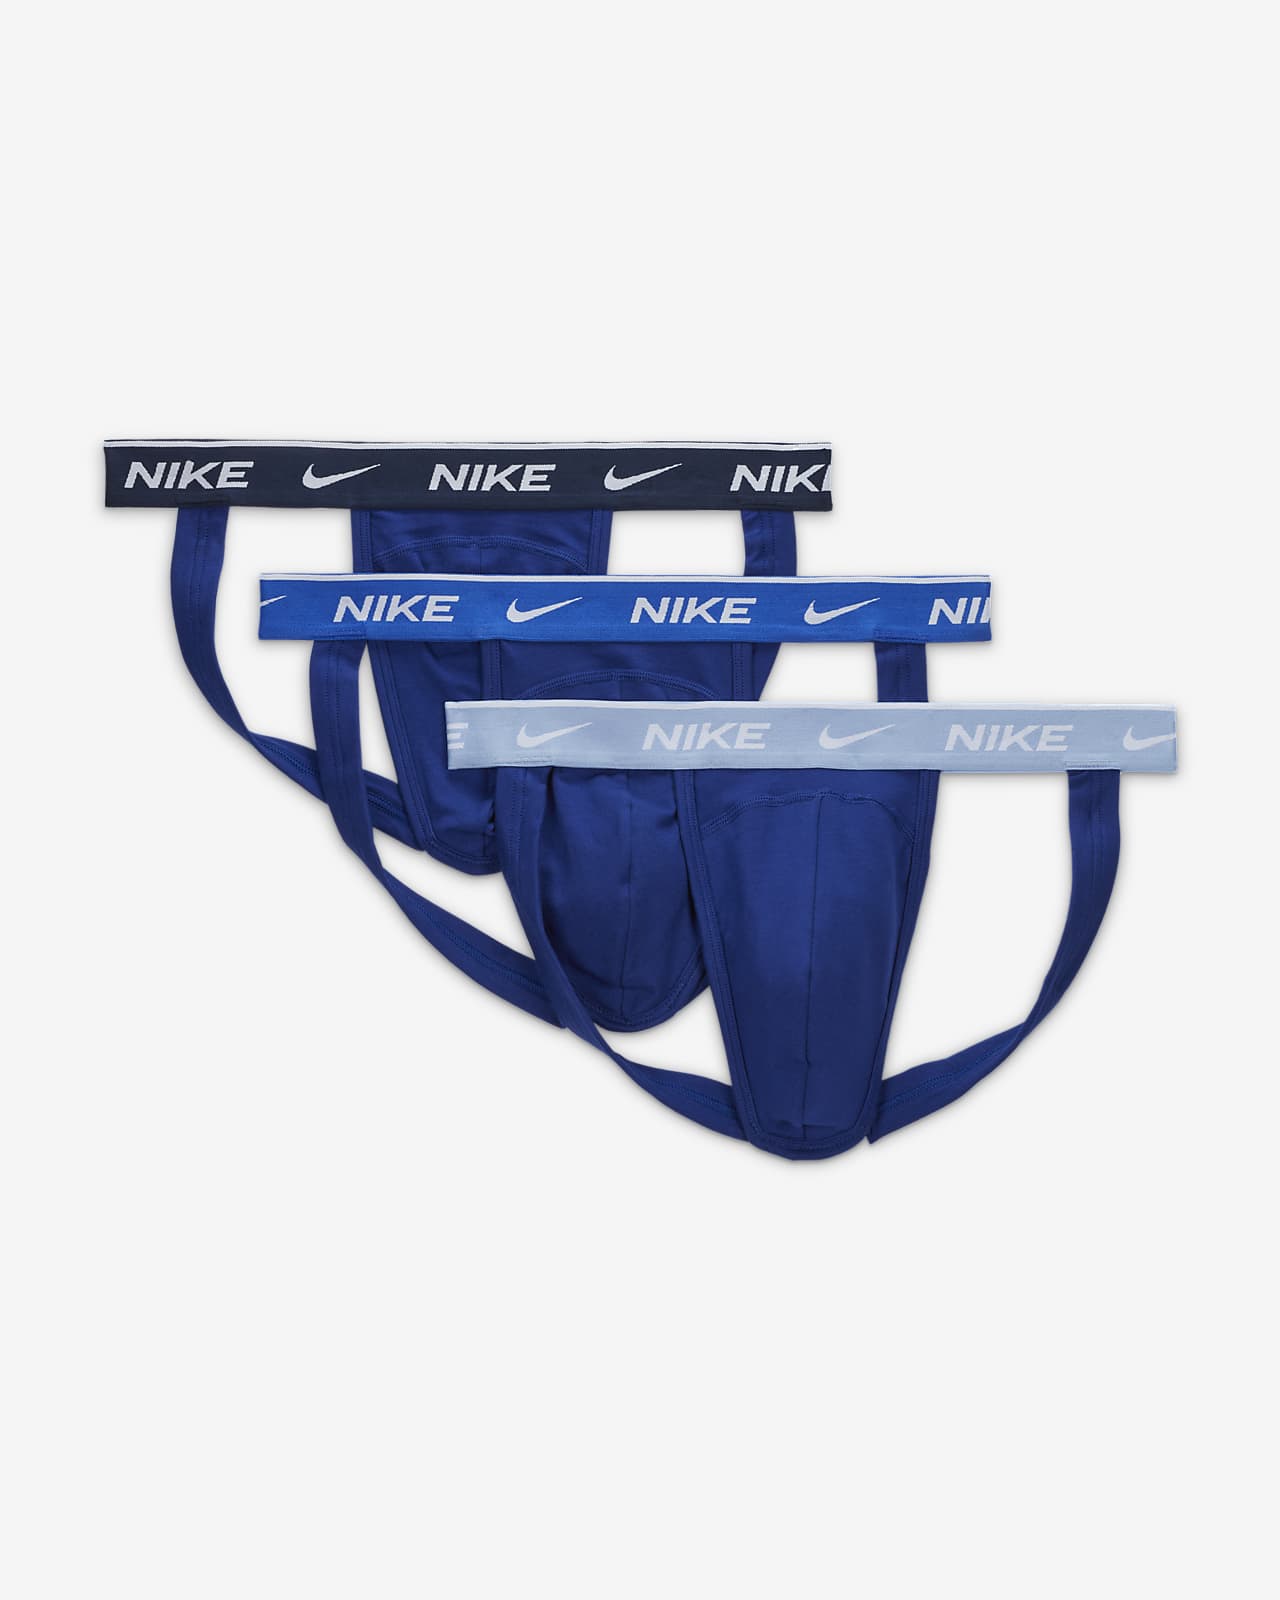 Nike Dri-FIT Essential Cotton Stretch Men's Jock Strap (3-Pack).